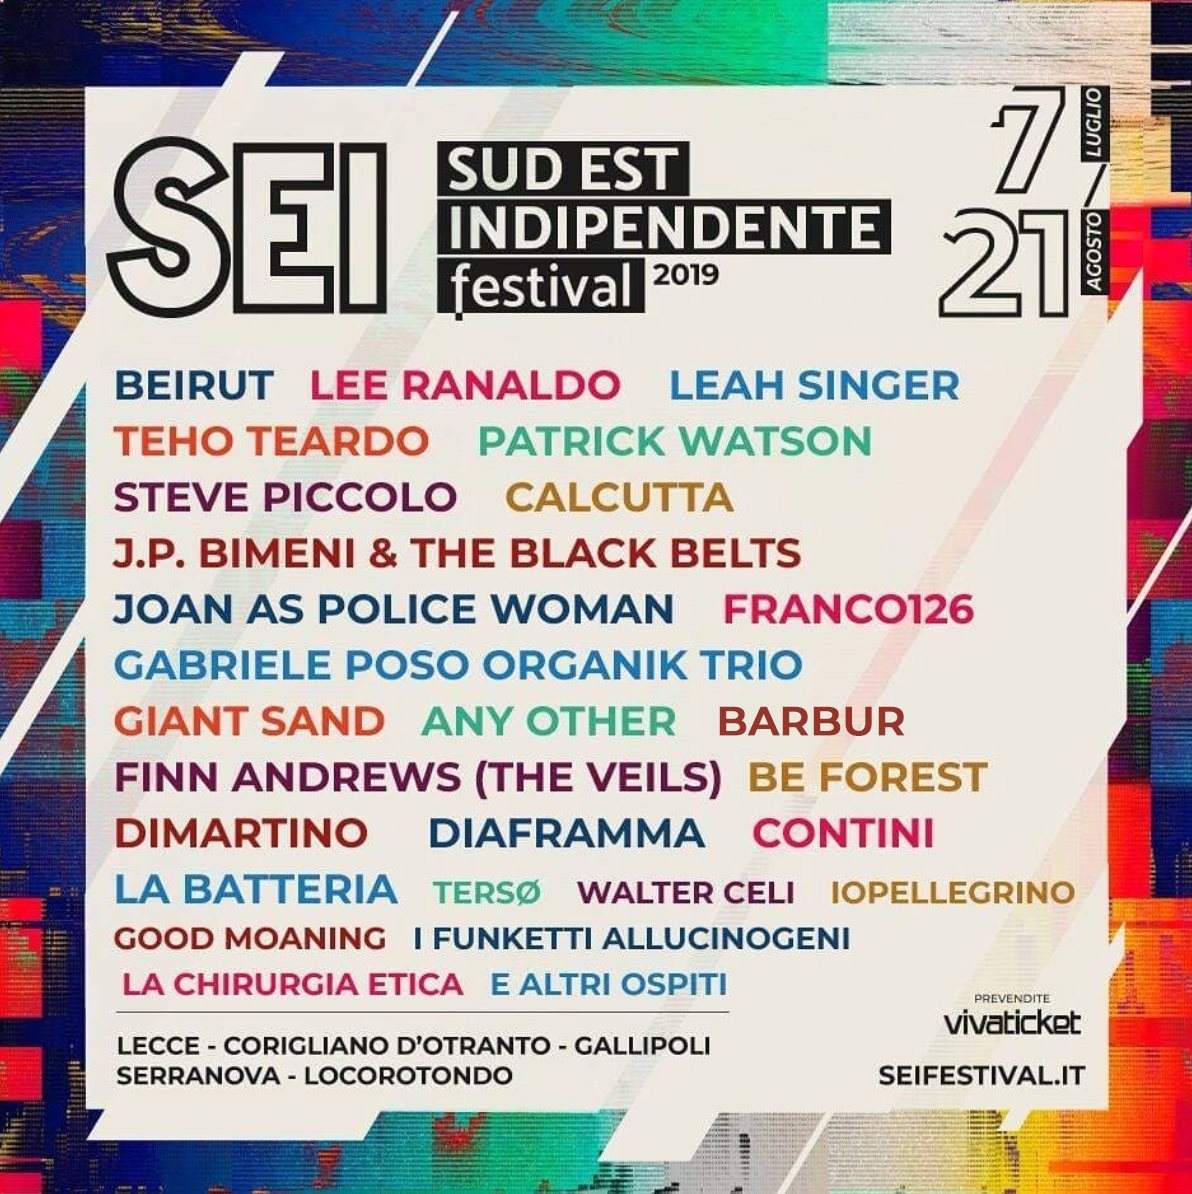 SEI Festival - Sud Est Indipendente - 7 Luglio/21 Agosto - Página frontal